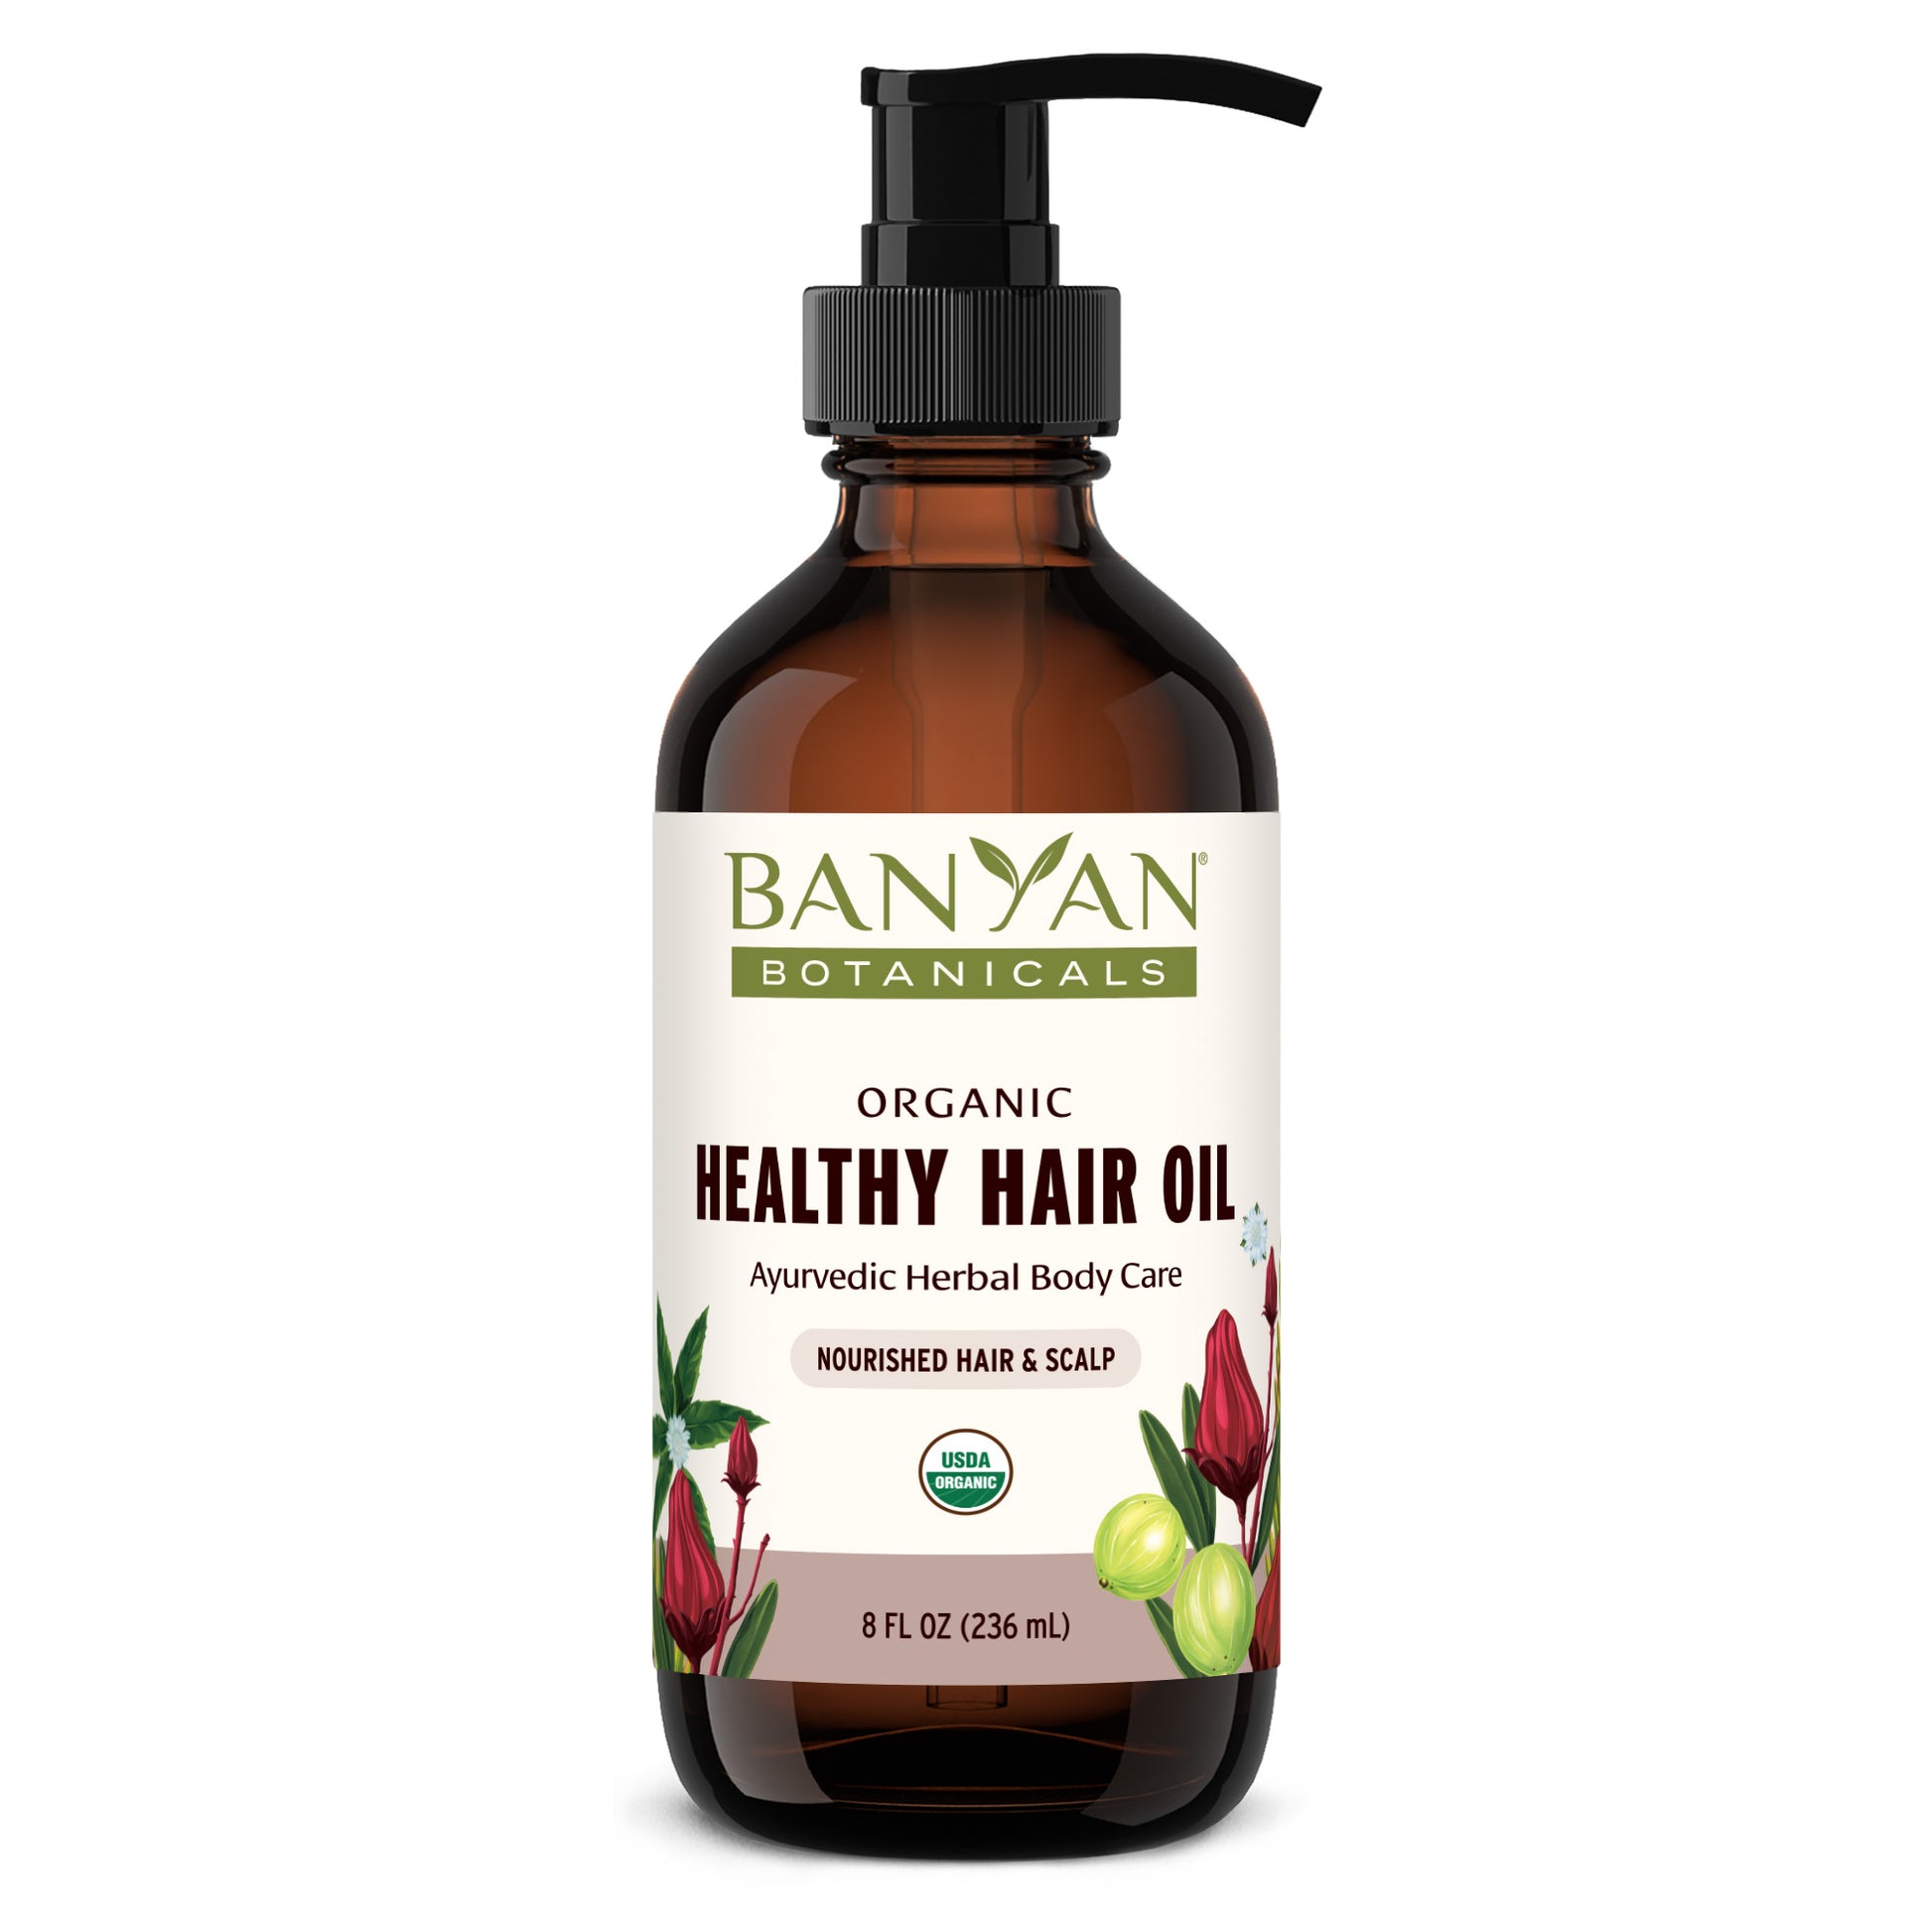 8 fl oz Healthy Hair Oil